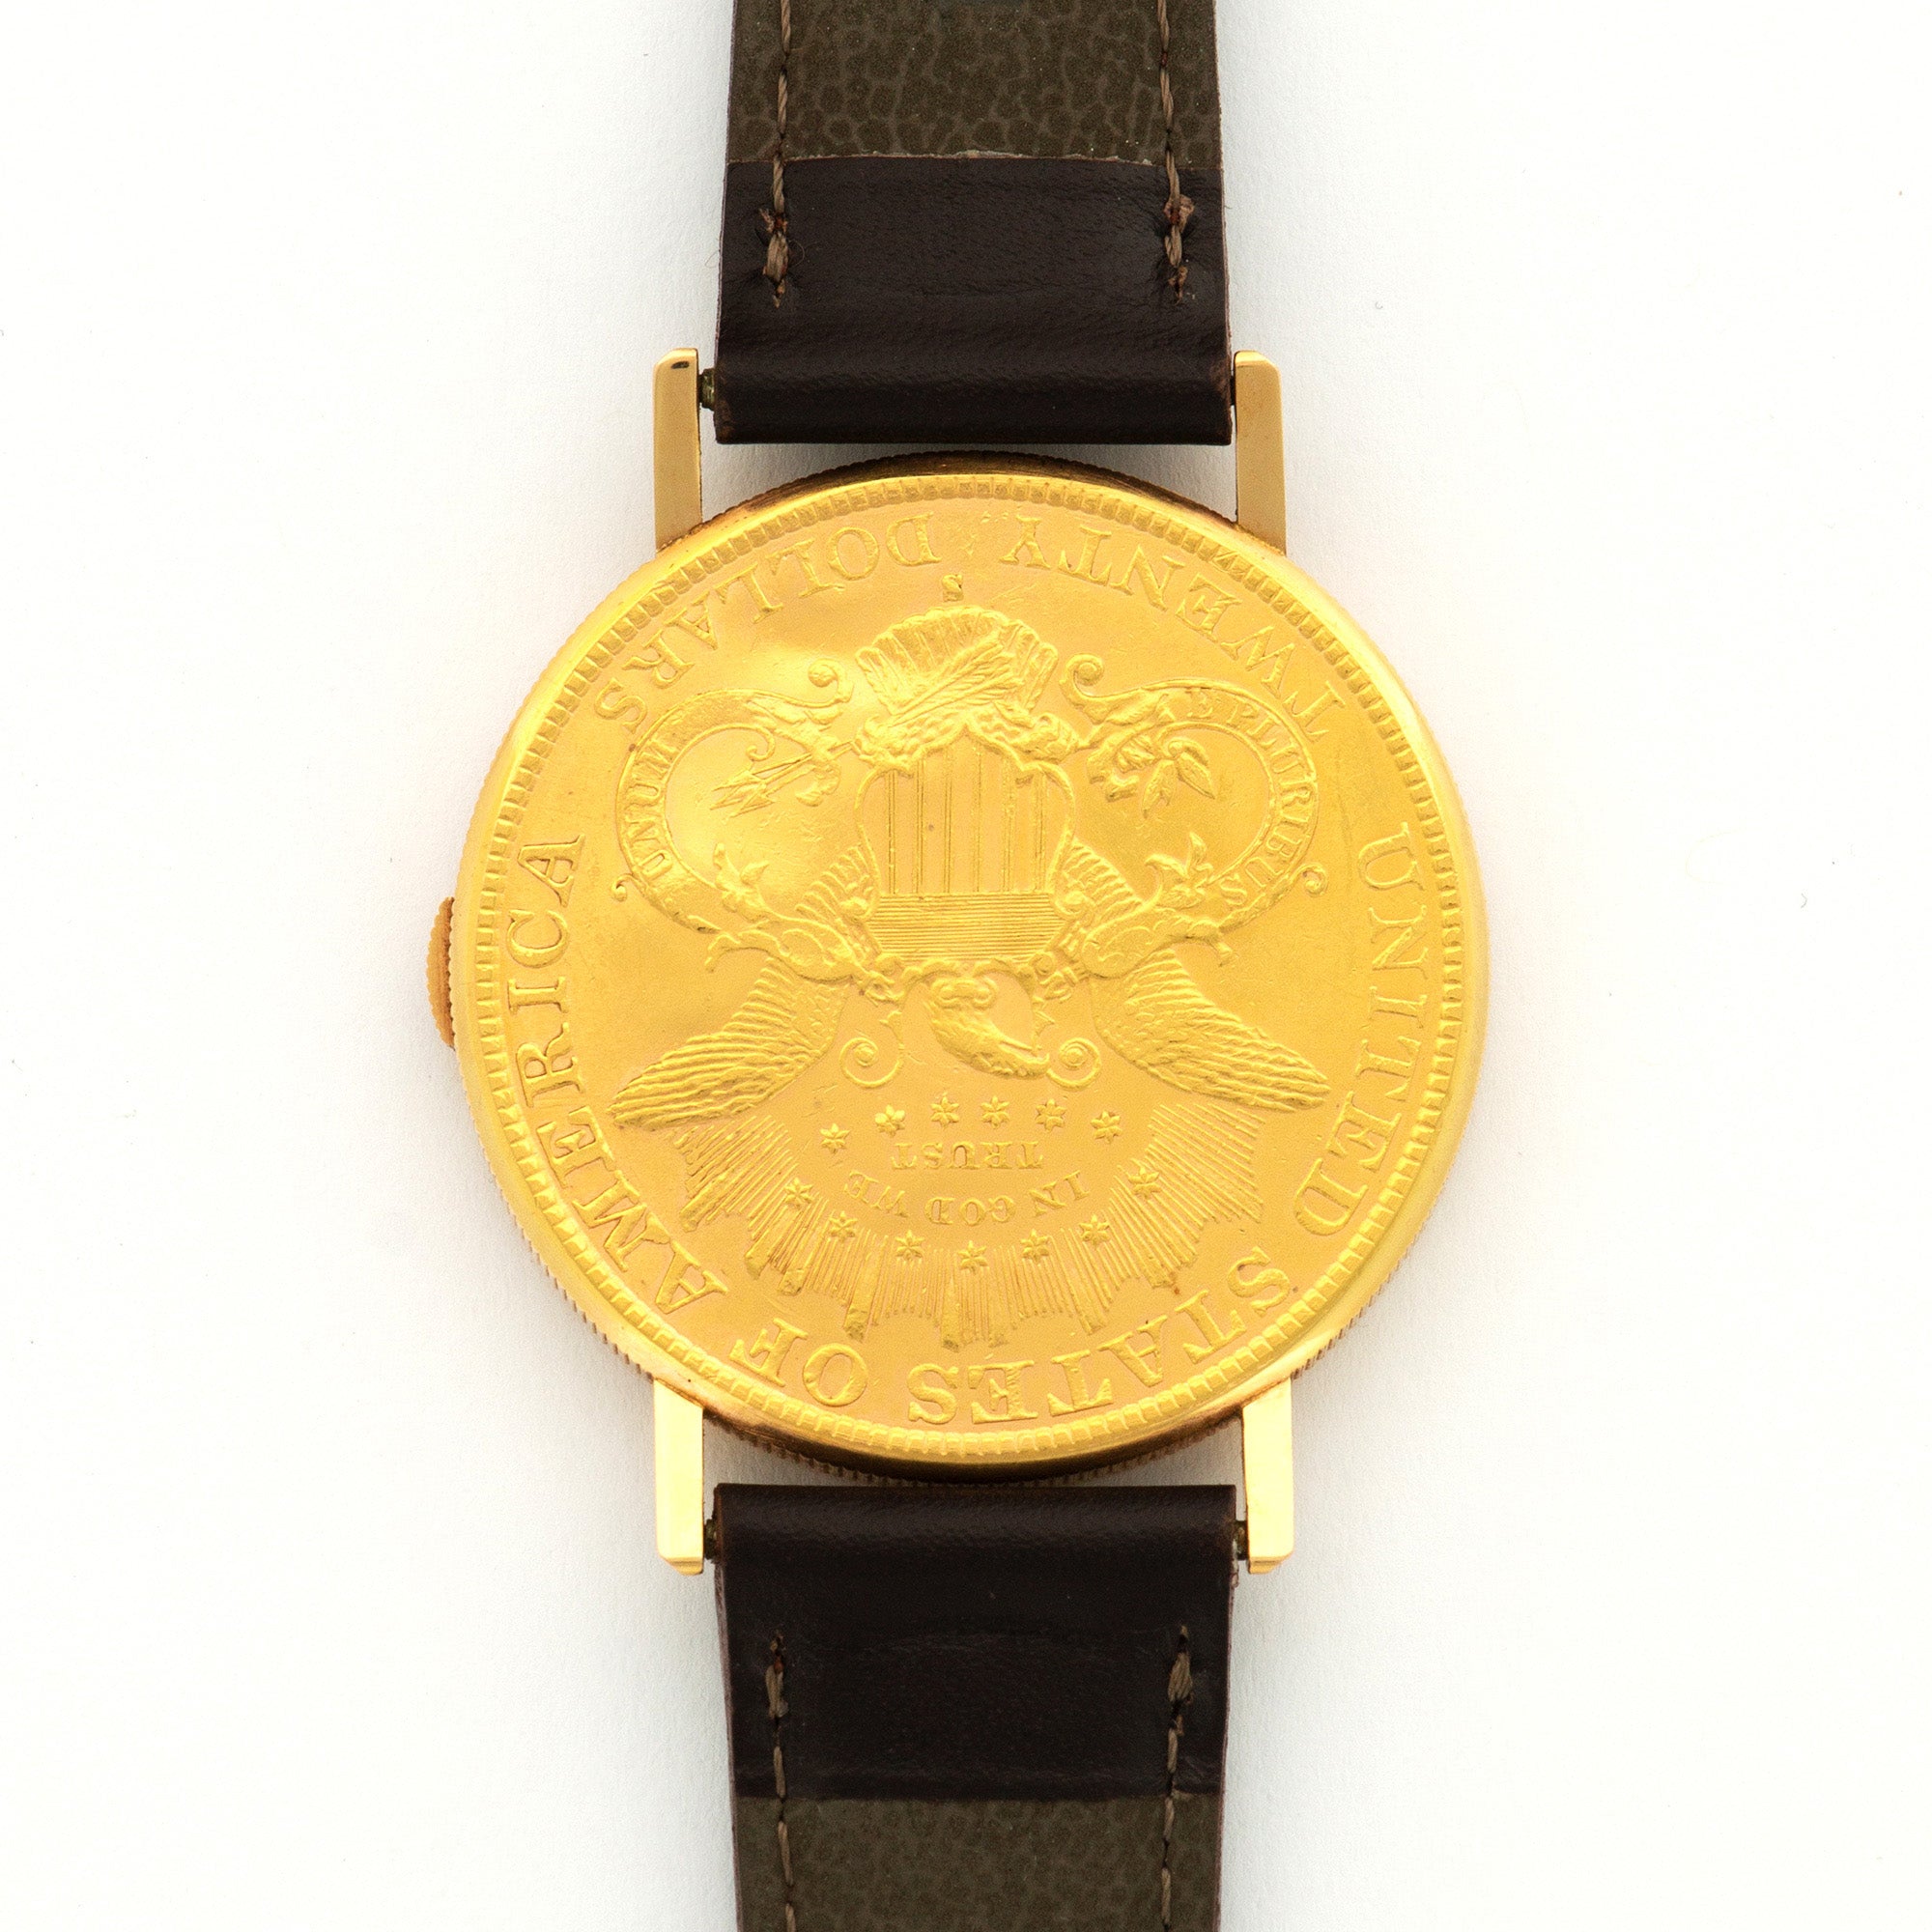 Audemars Piguet - Audemars Piguet Yellow Gold Skeleton Coin Watch - The Keystone Watches